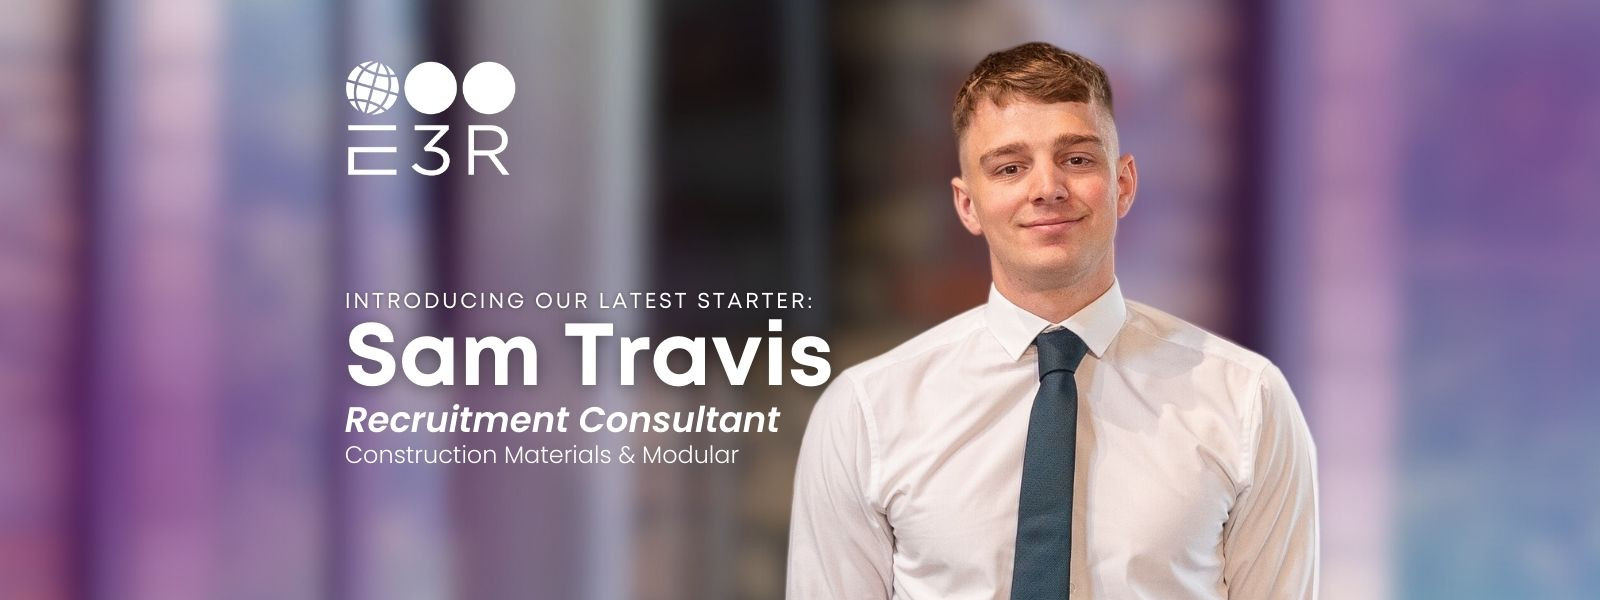 Meet Sam Travis, Recruitment Consultant in our Construction Materials & Modular Team